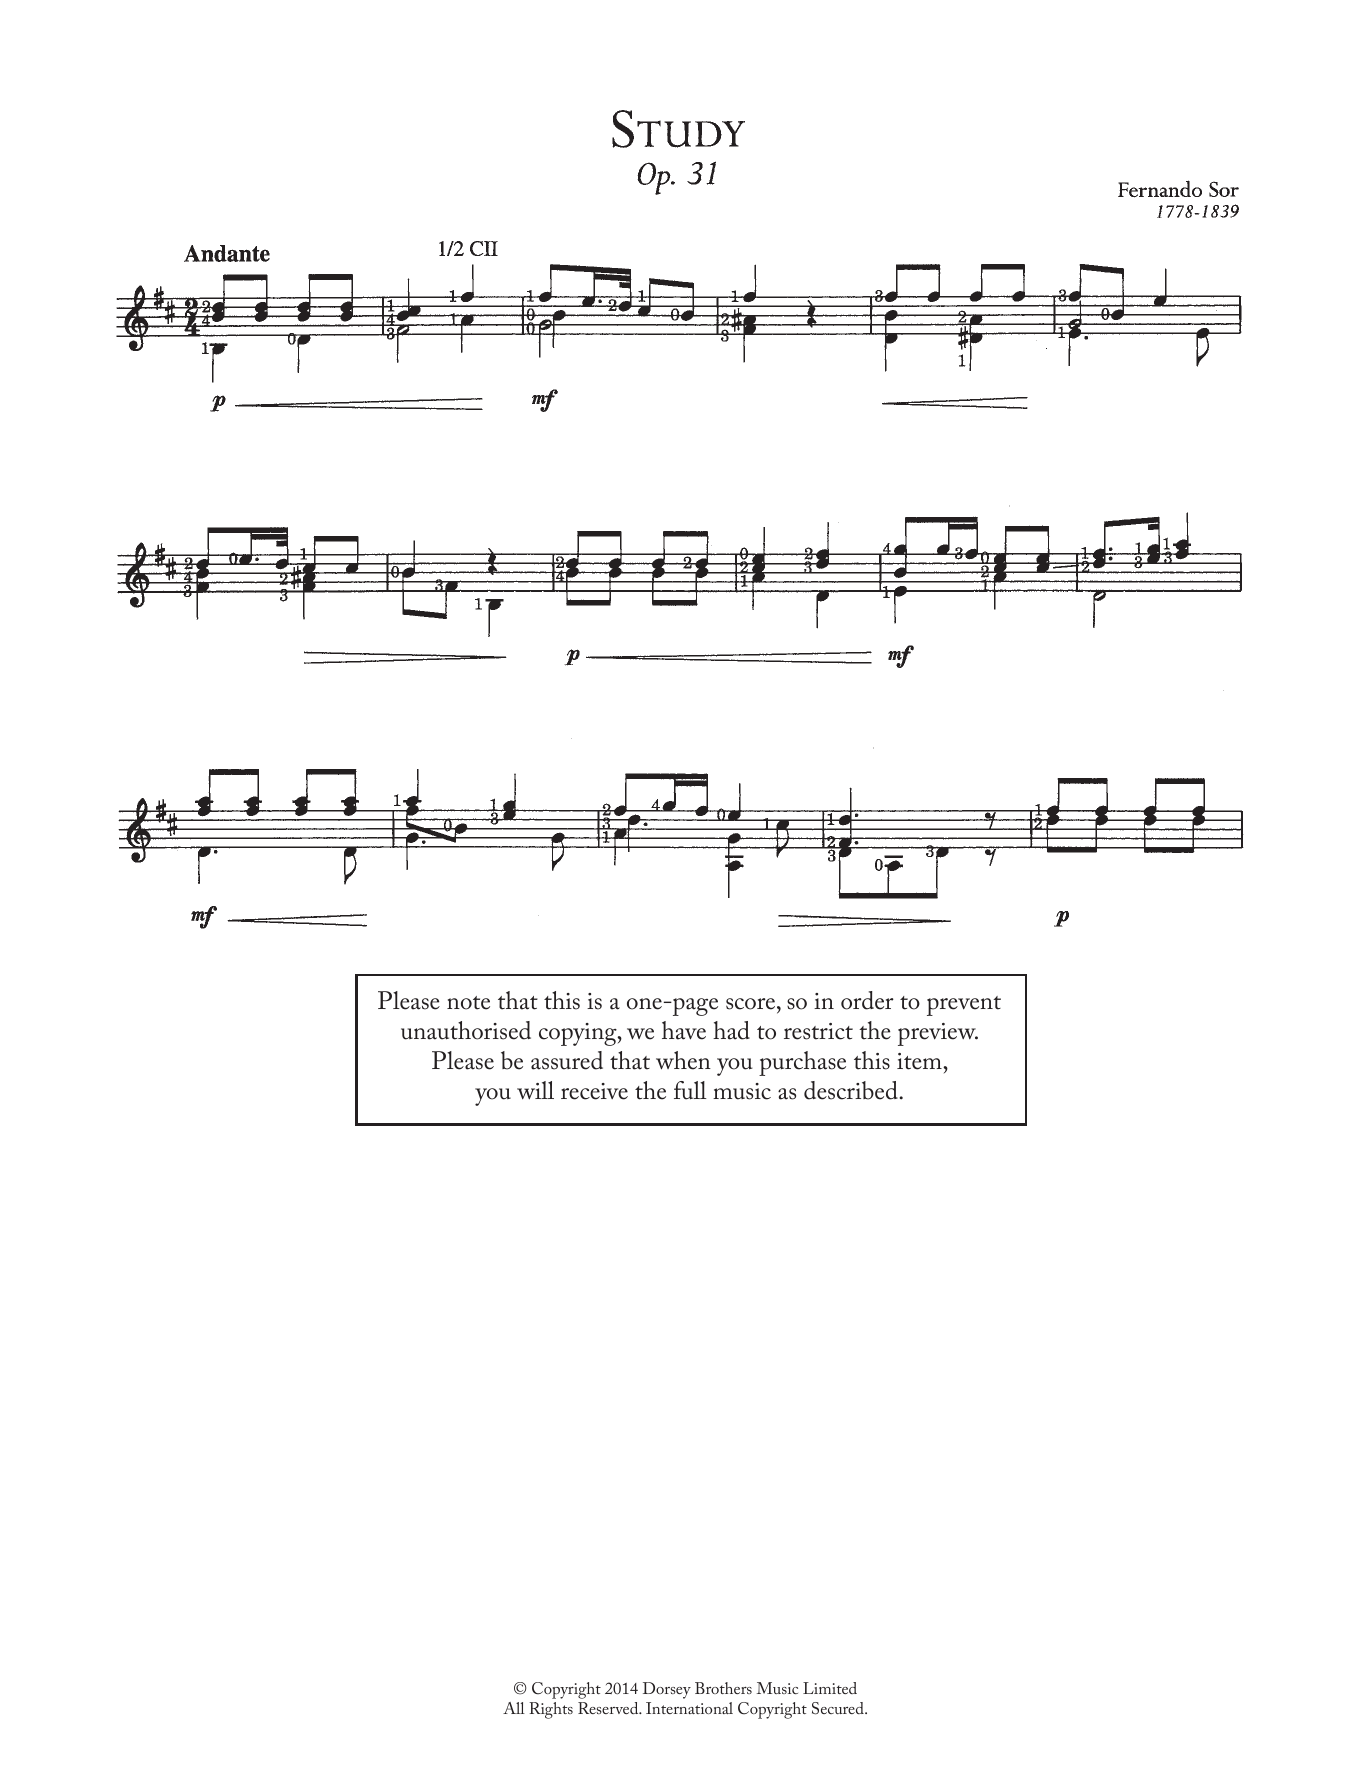 Study, Op.31 sheet music